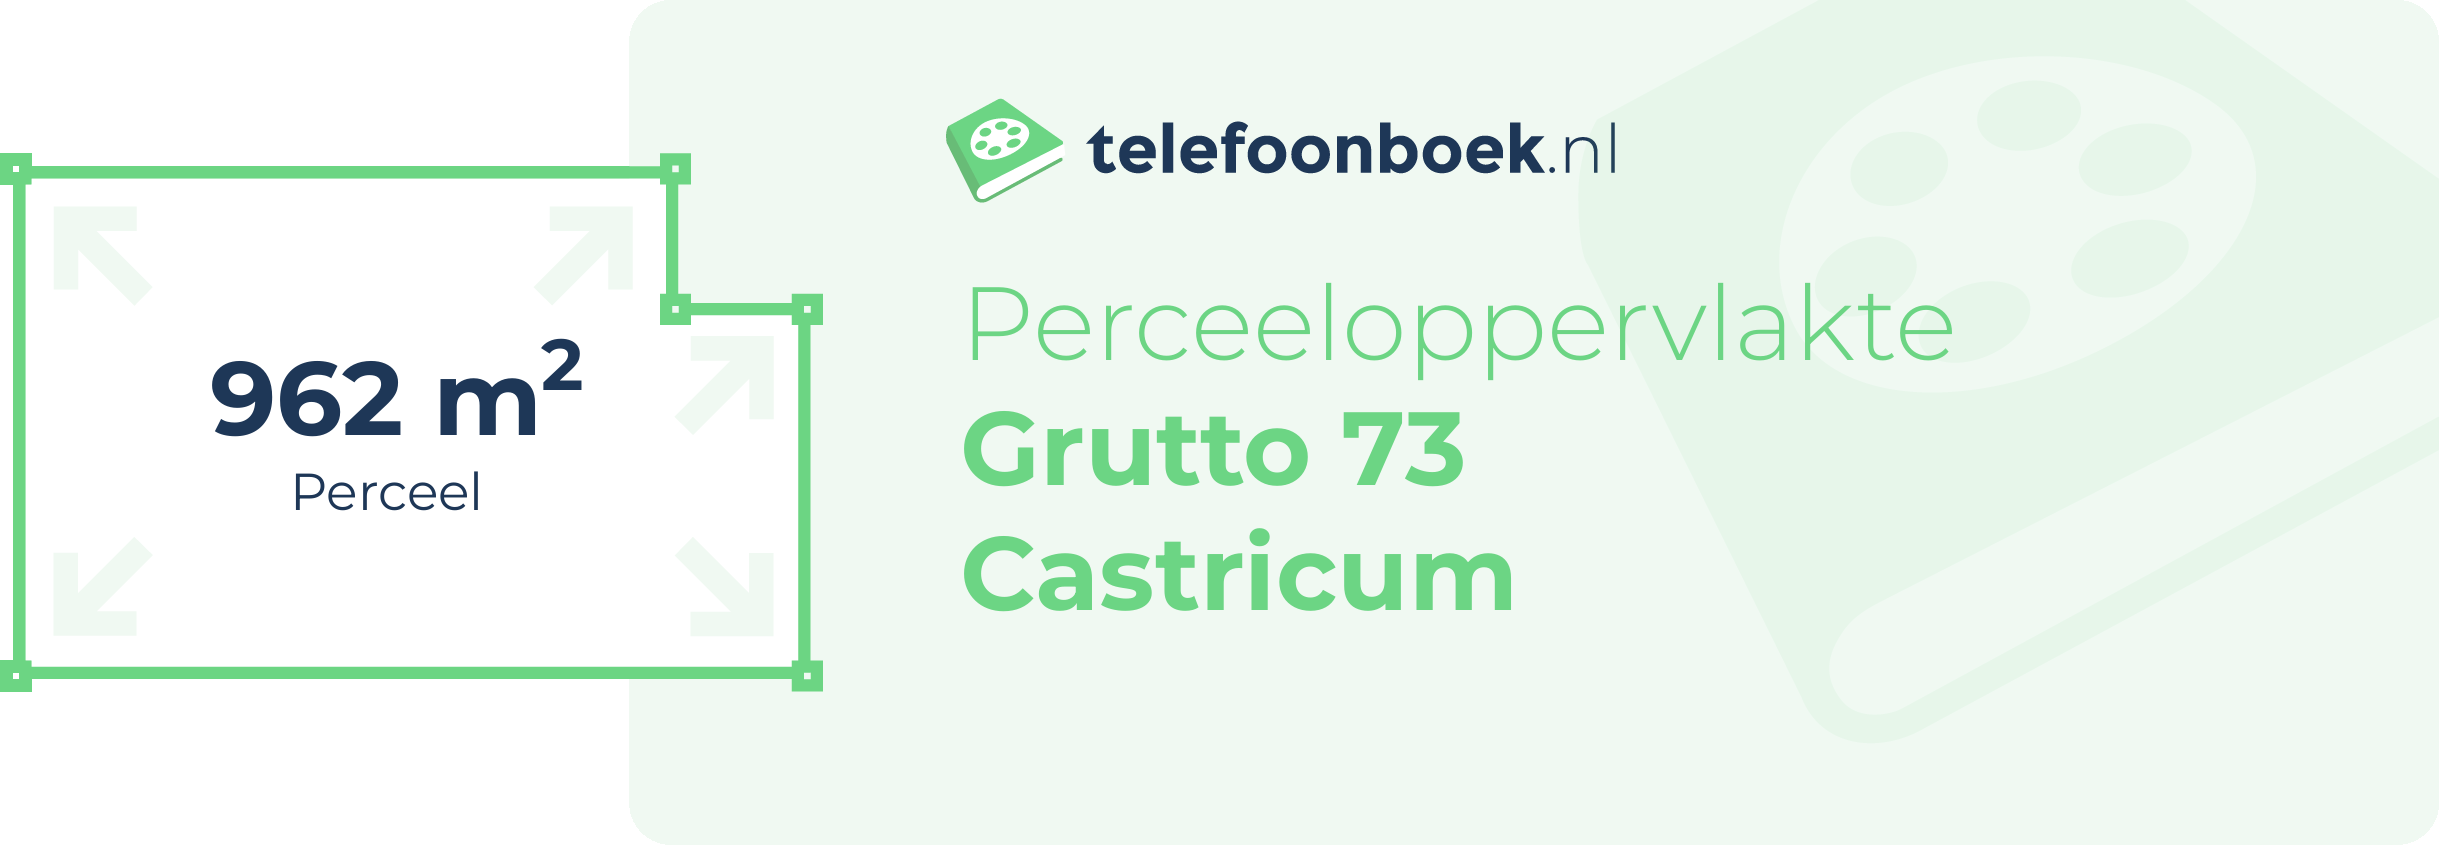 Perceeloppervlakte Grutto 73 Castricum